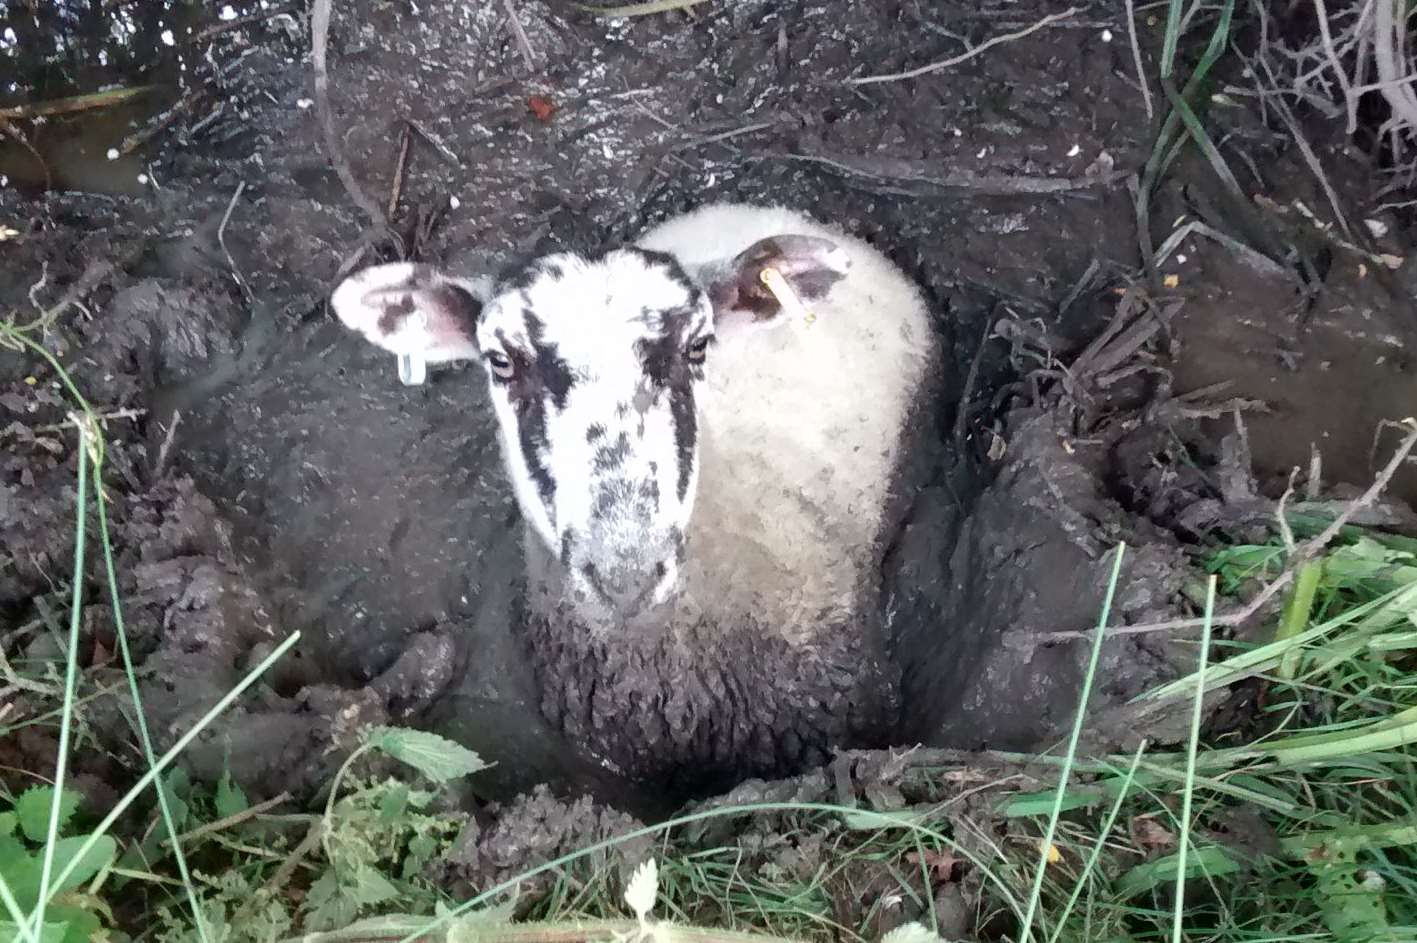 The muddy ewe stuck in the dyke